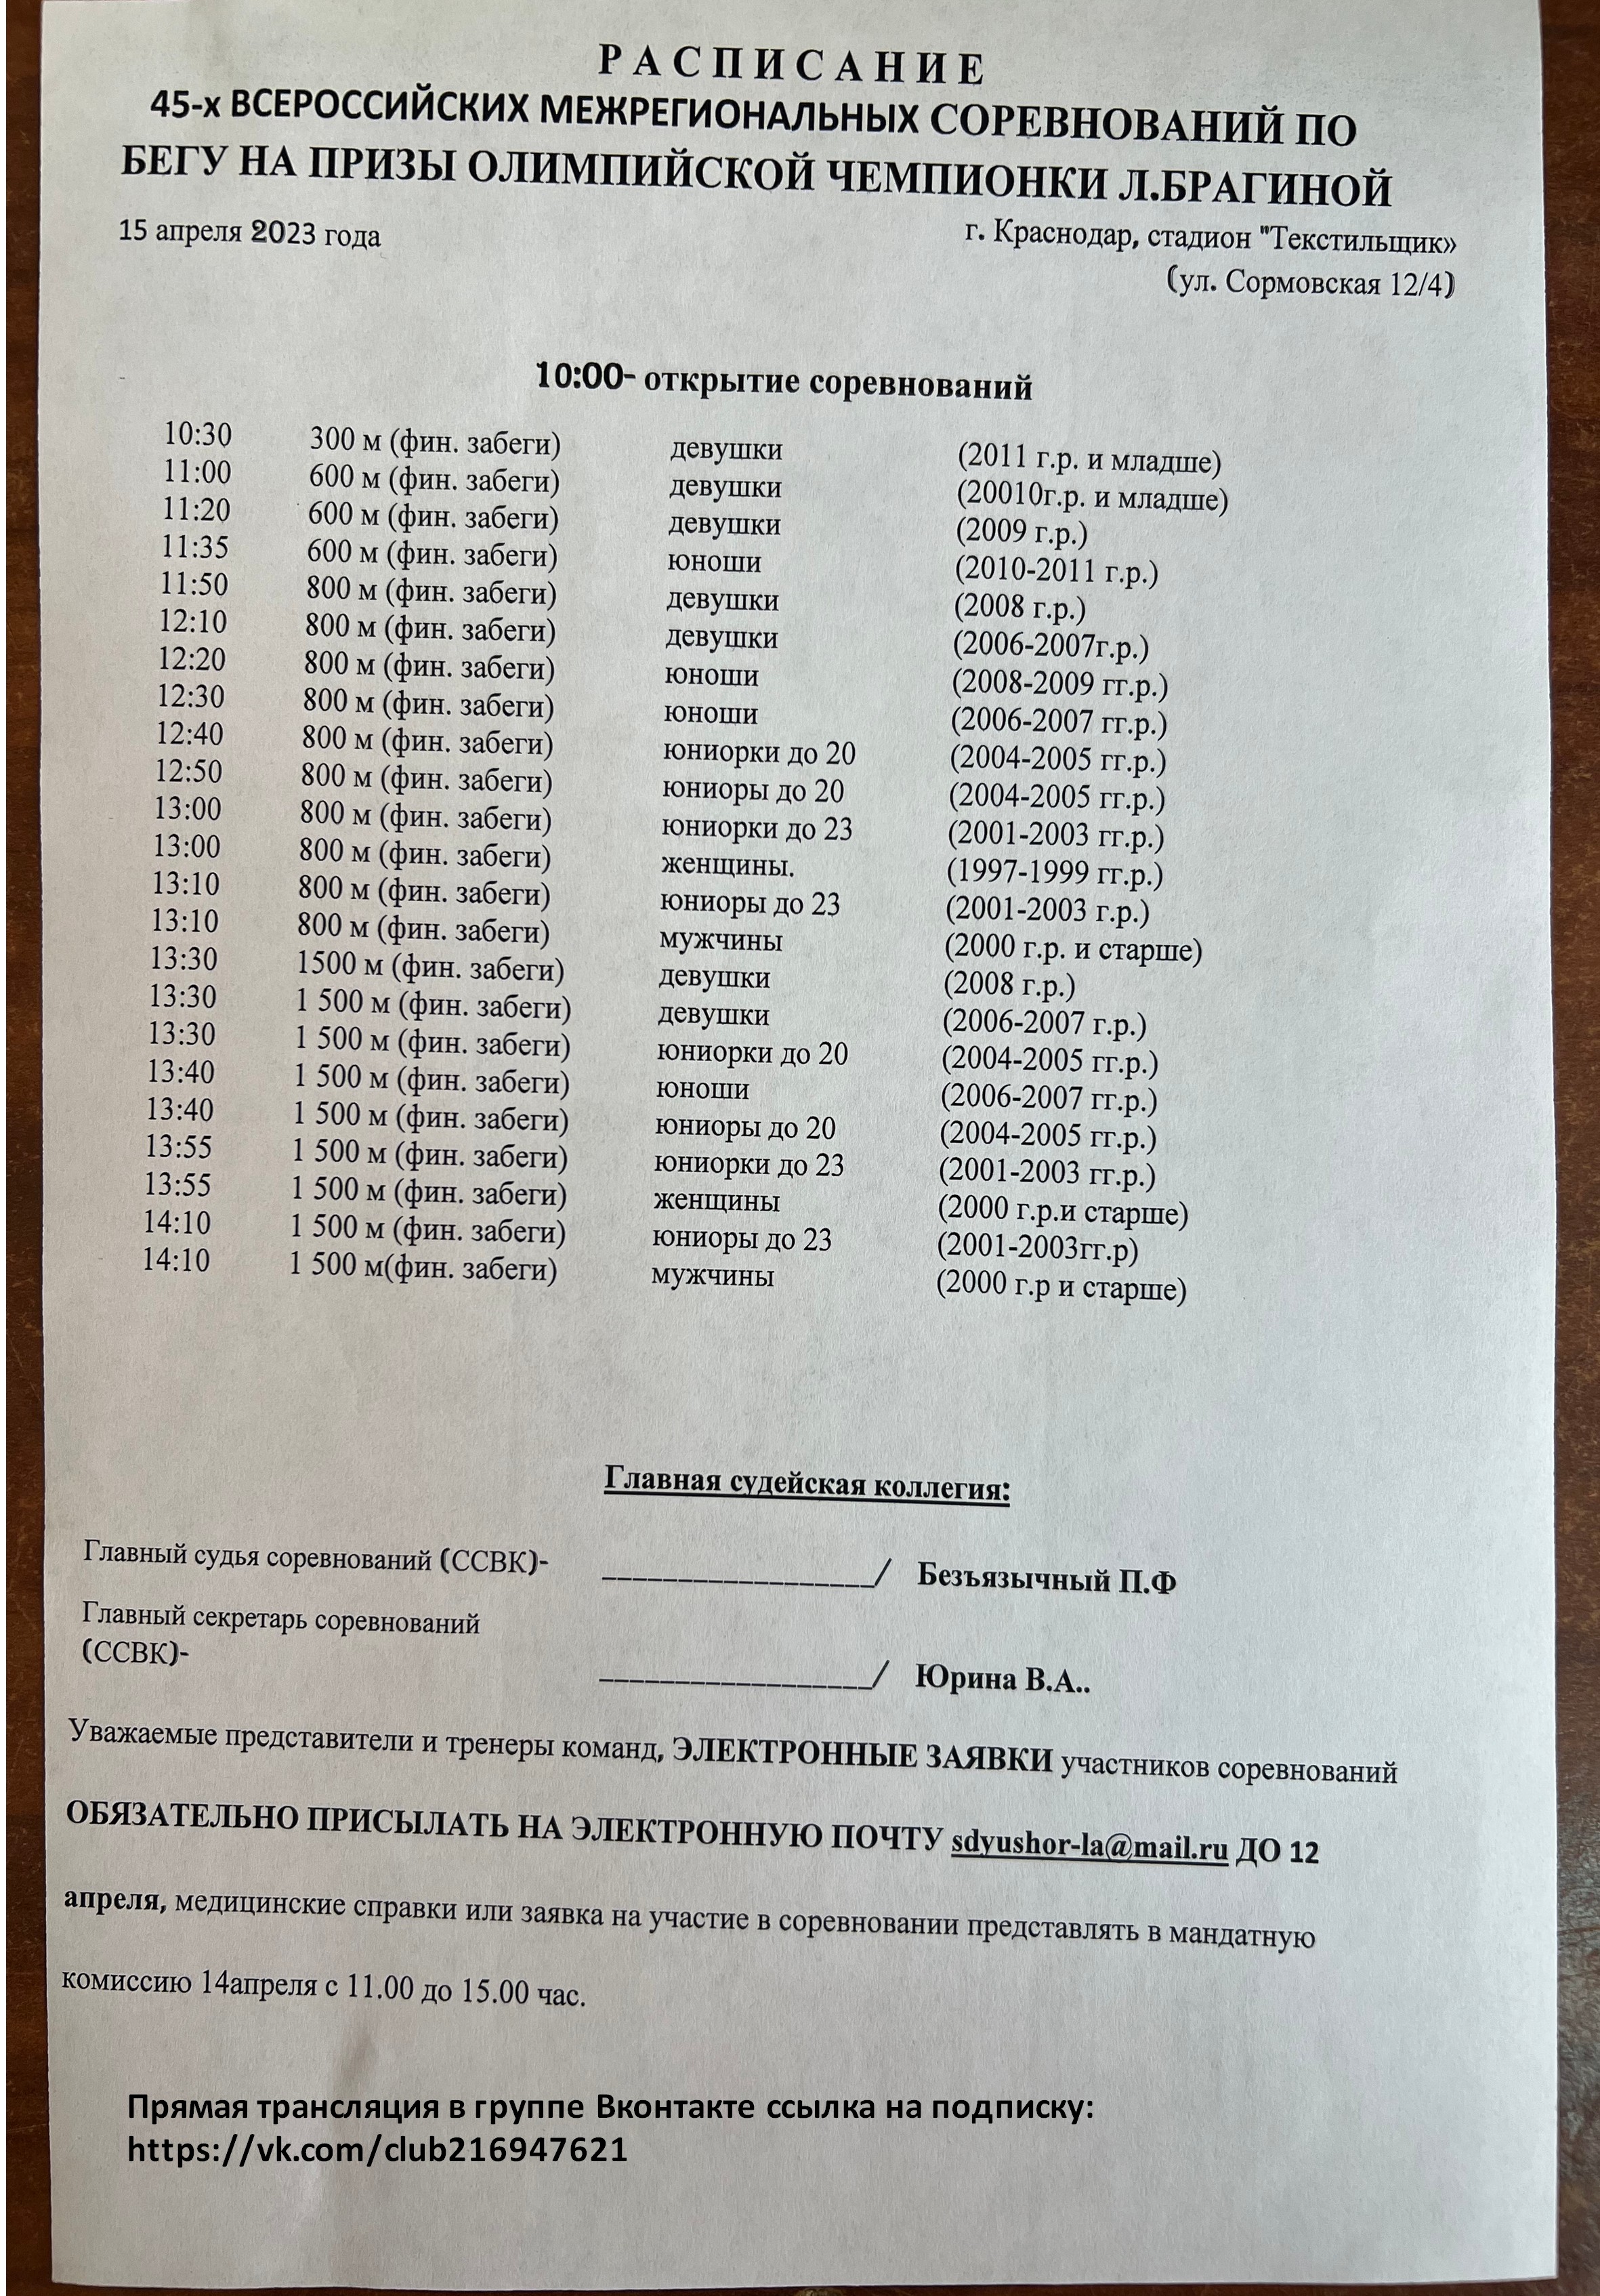 Расписание 45-х Всероссийских межрегиональных соревнований по бегу на призы олимпийской чемпионки Л. Брагиной (15 апреля 2023 г., г. Краснодар)